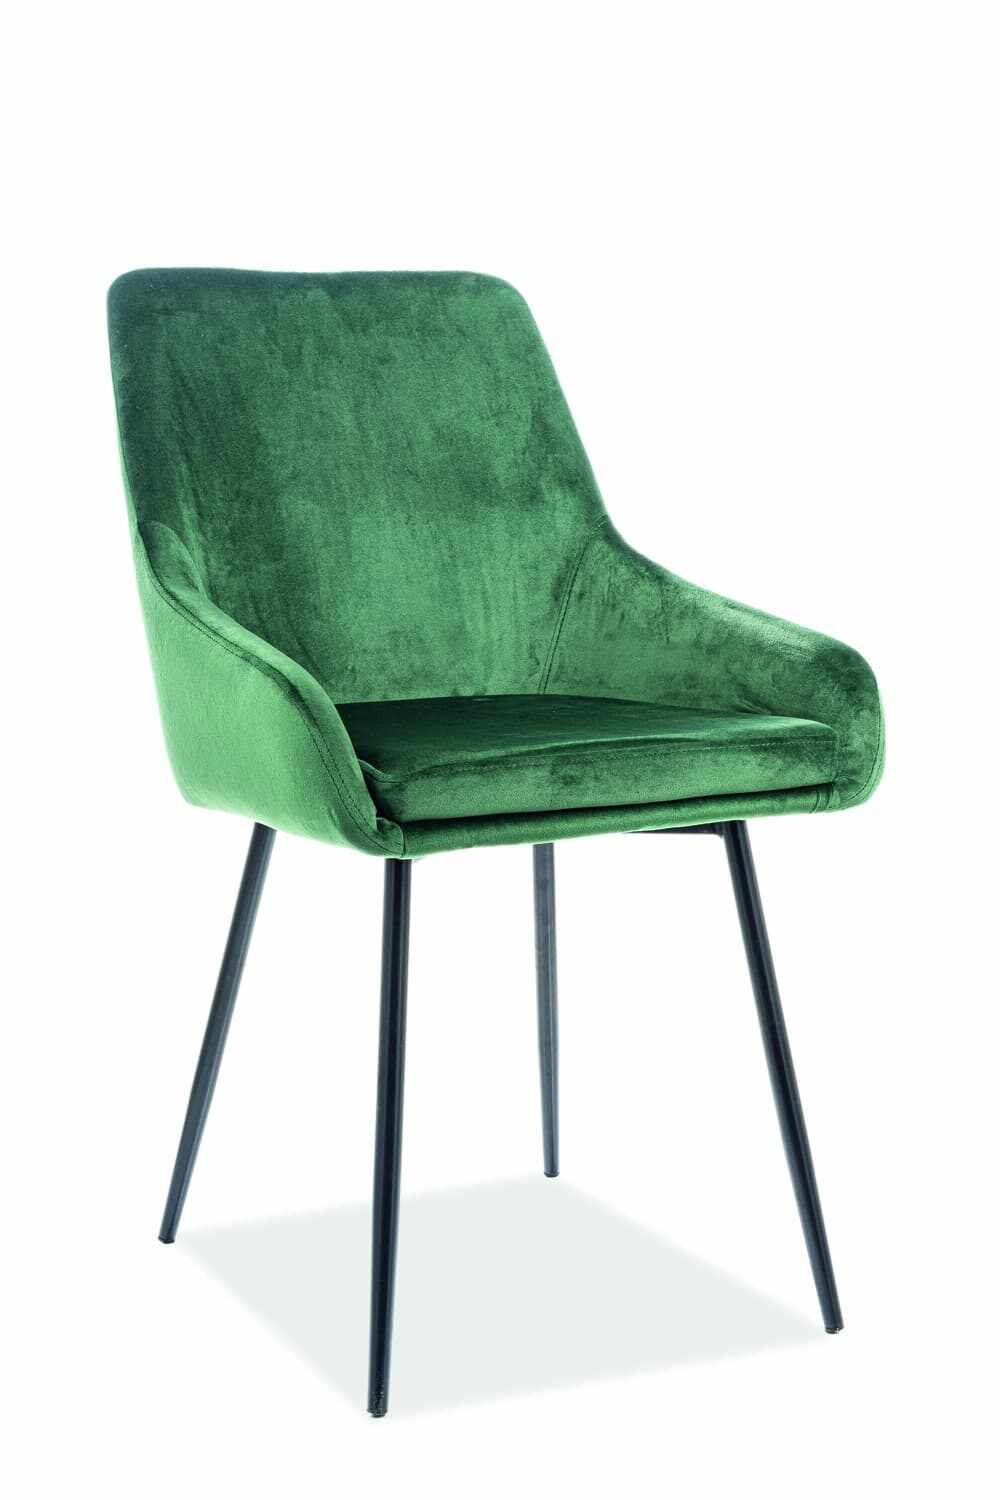 Scaun tapitat cu stofa, cu picioare metalice Albi Velvet Verde Inchis / Negru, l50xA45xH82 cm